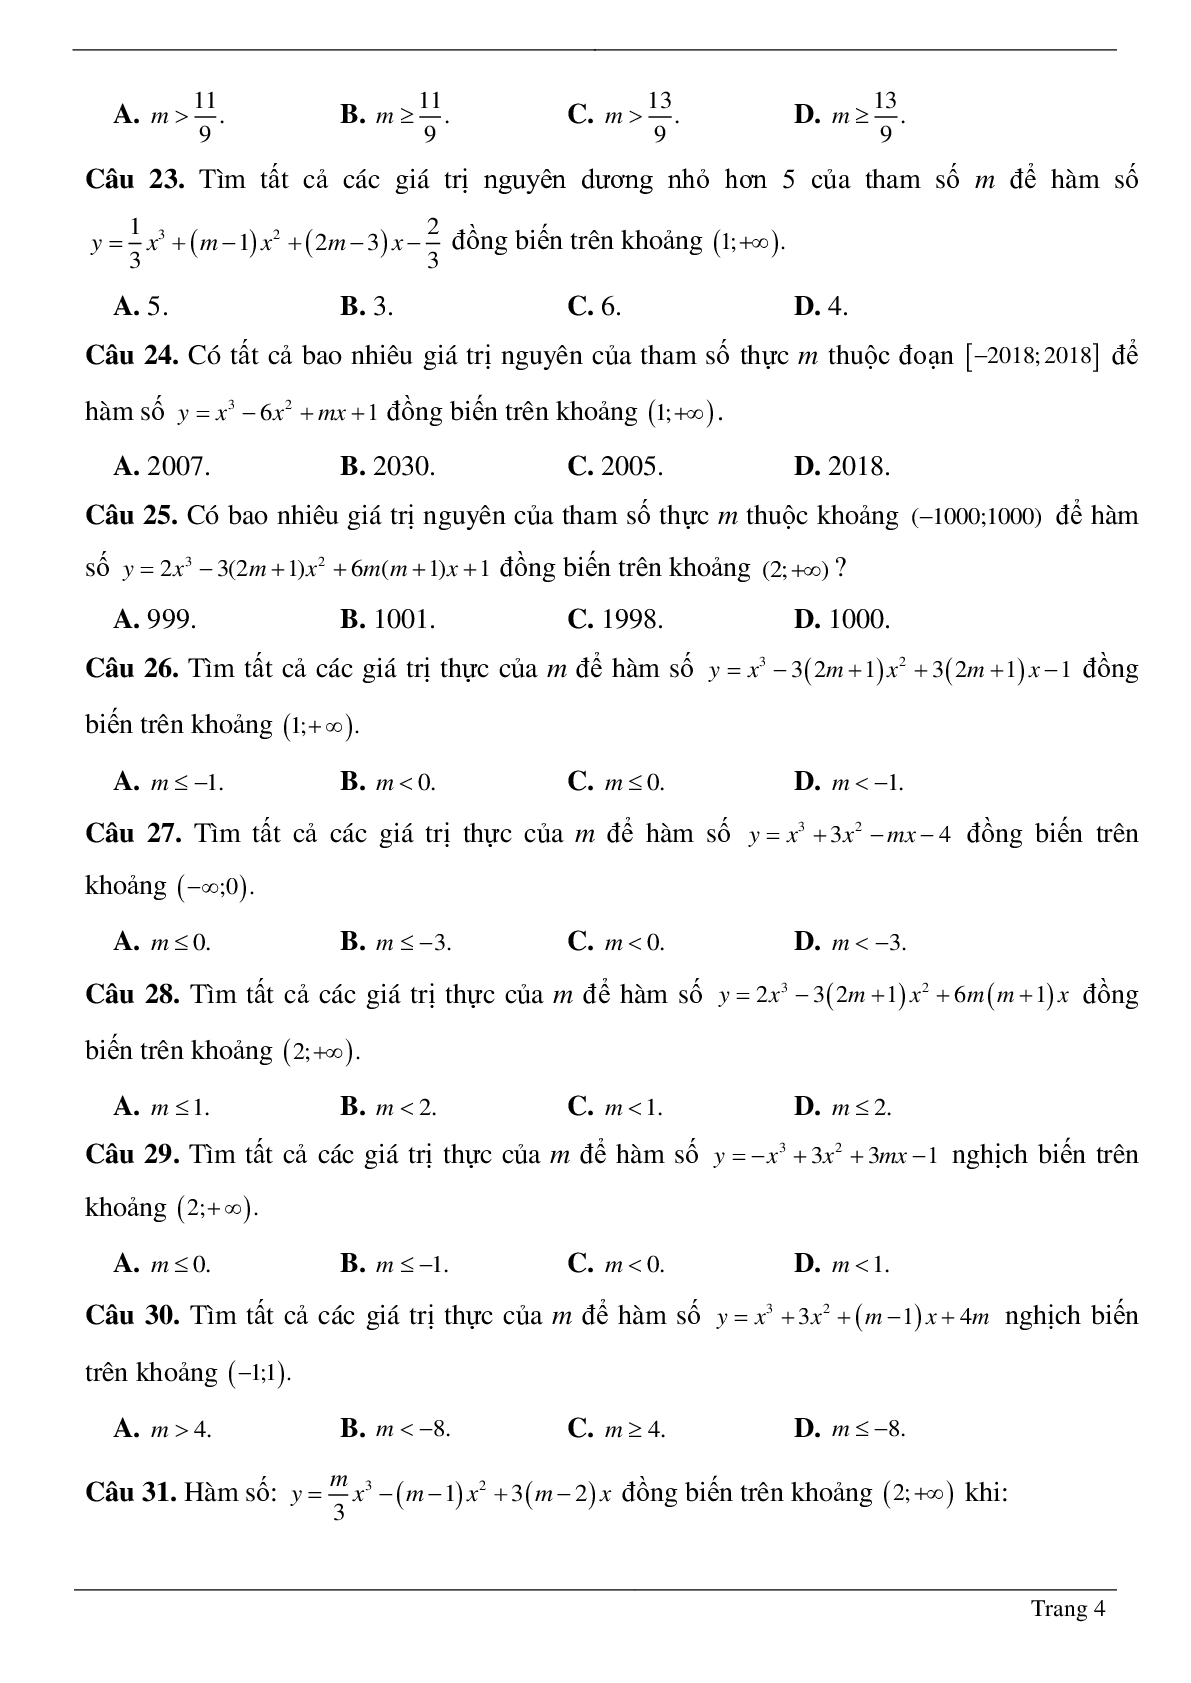 Tìm tham số M để hàm số bậc ba đồng biến, nghịch biến trên khoảng K cho trước (trang 4)